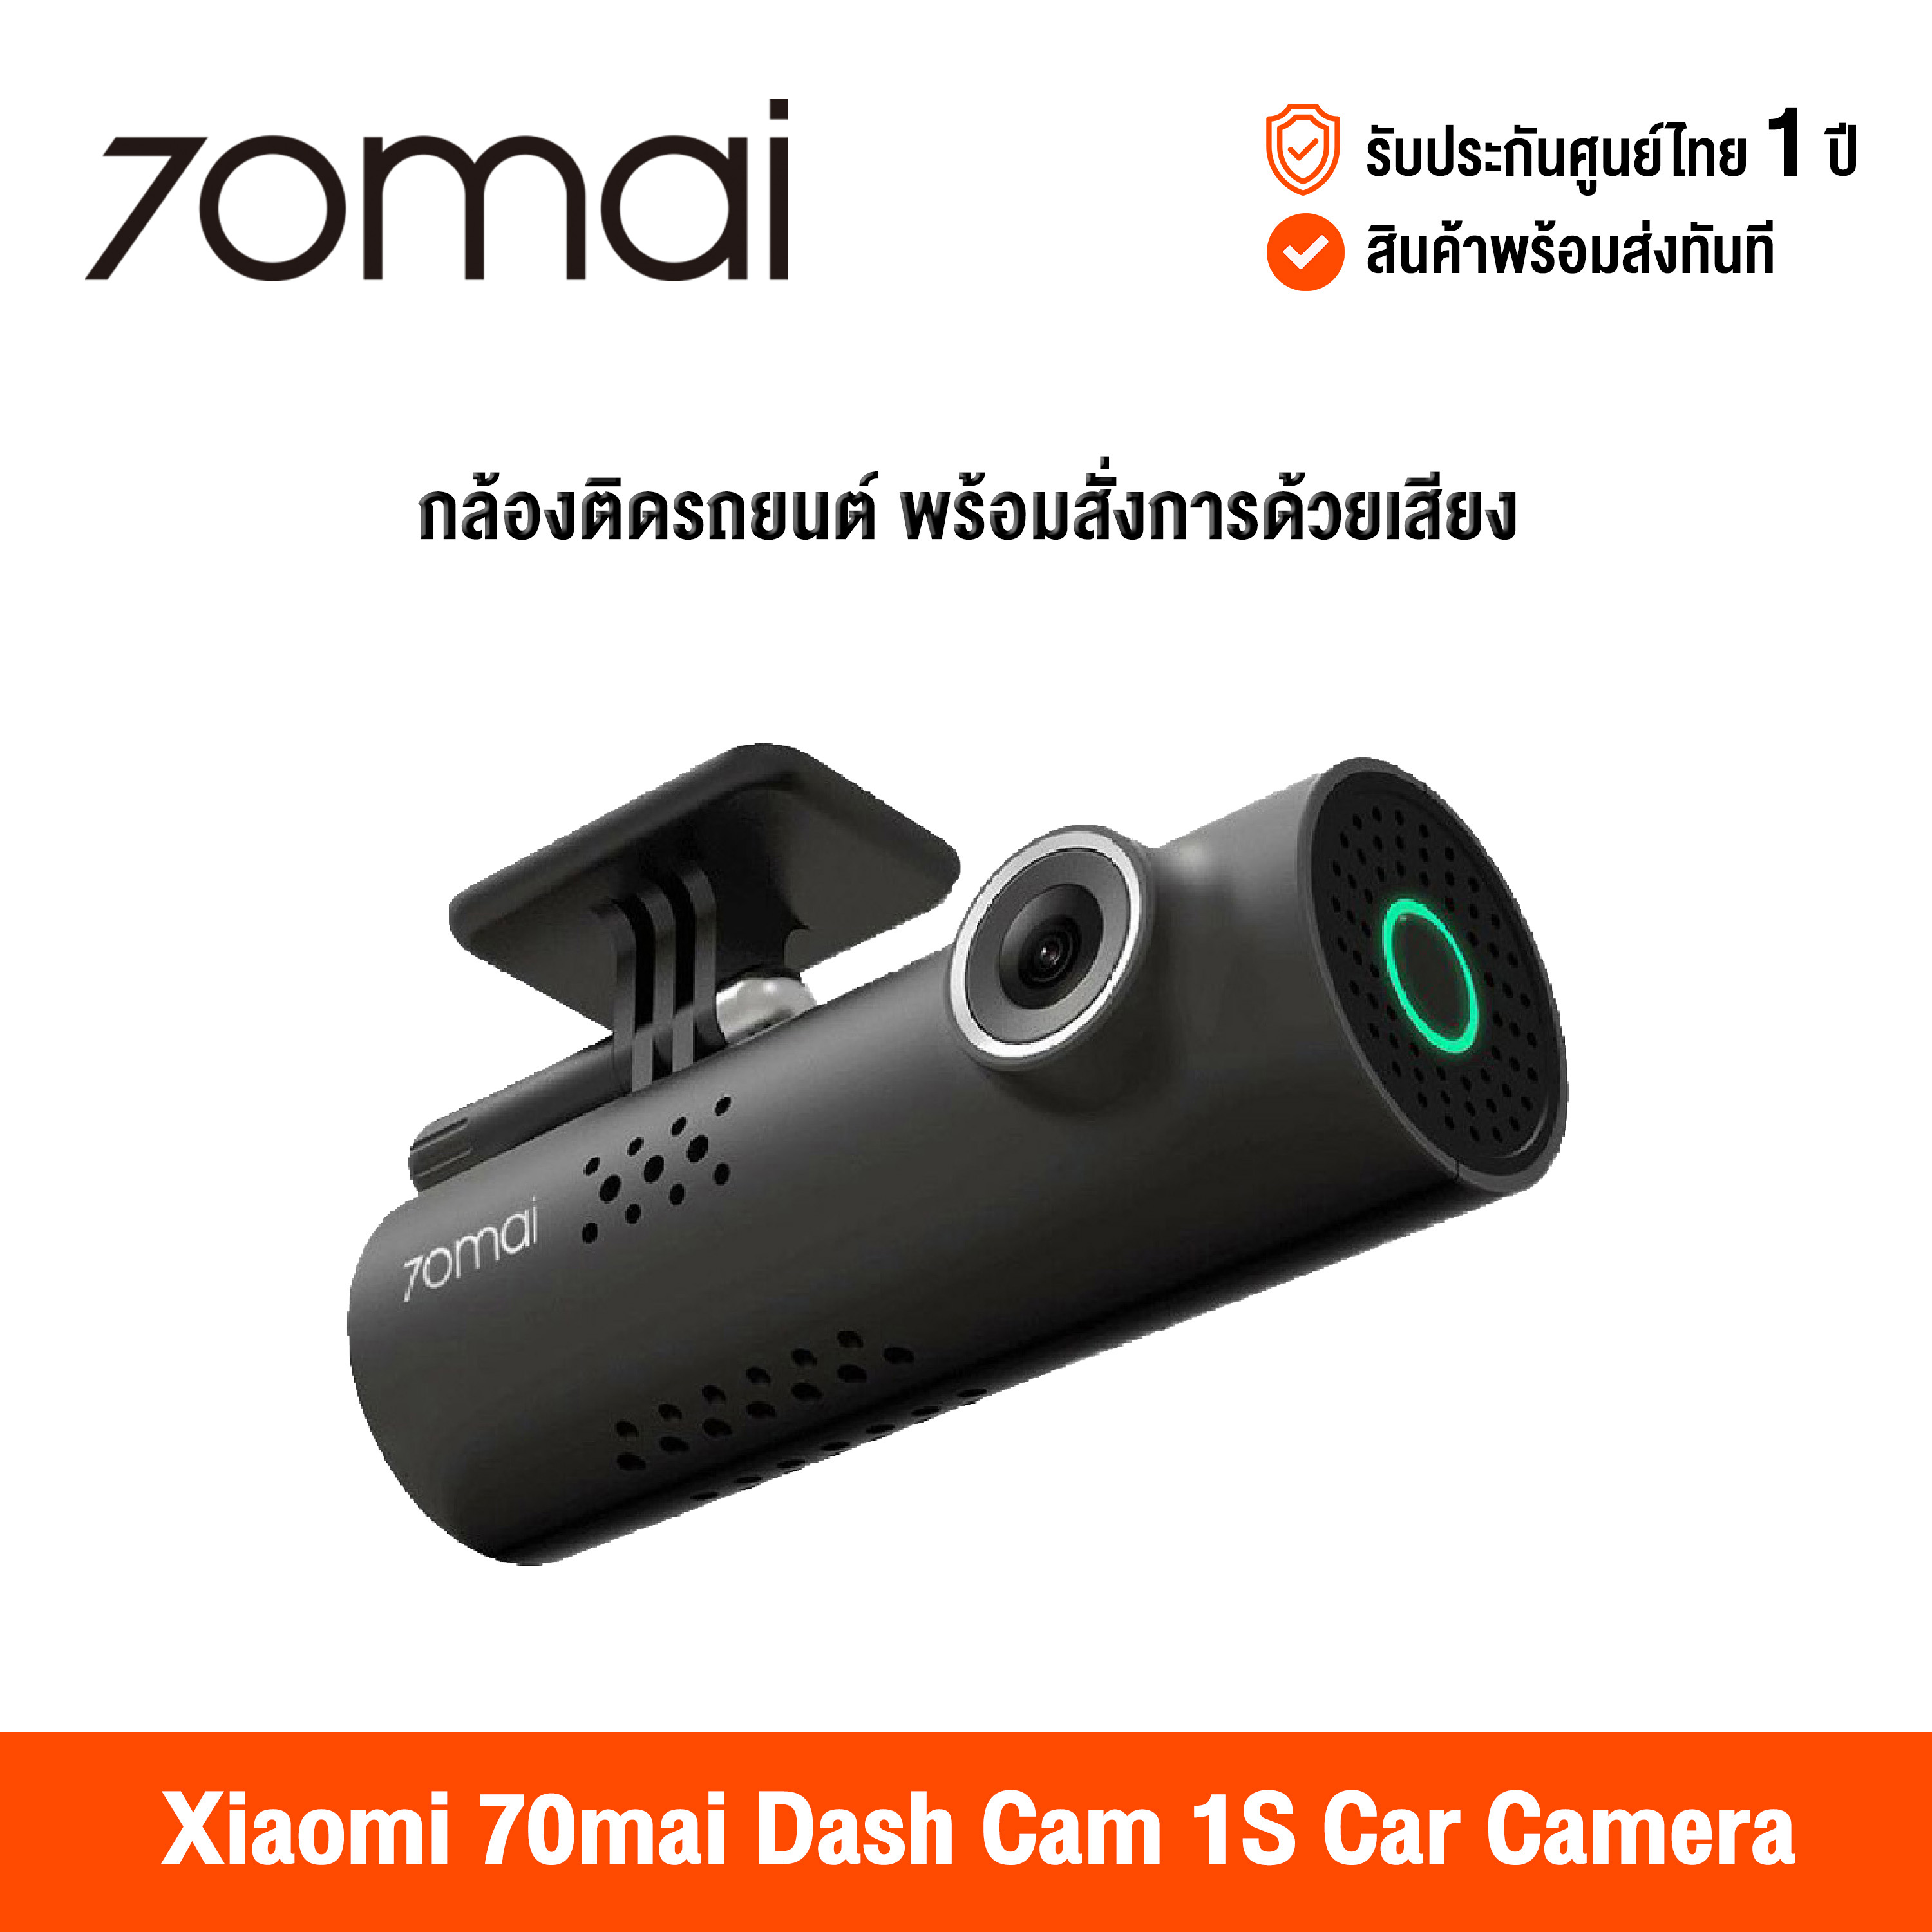 [ส่ง 10 สิงหาคม] 70mai Dash Cam 1S Car Camera (Global Version) เสี่ยวหมี่ กล้องติดรถยนต์ พร้อม wifi สามารถสั่งการด้วยเสียง มุมมองภาพ 130 องศา